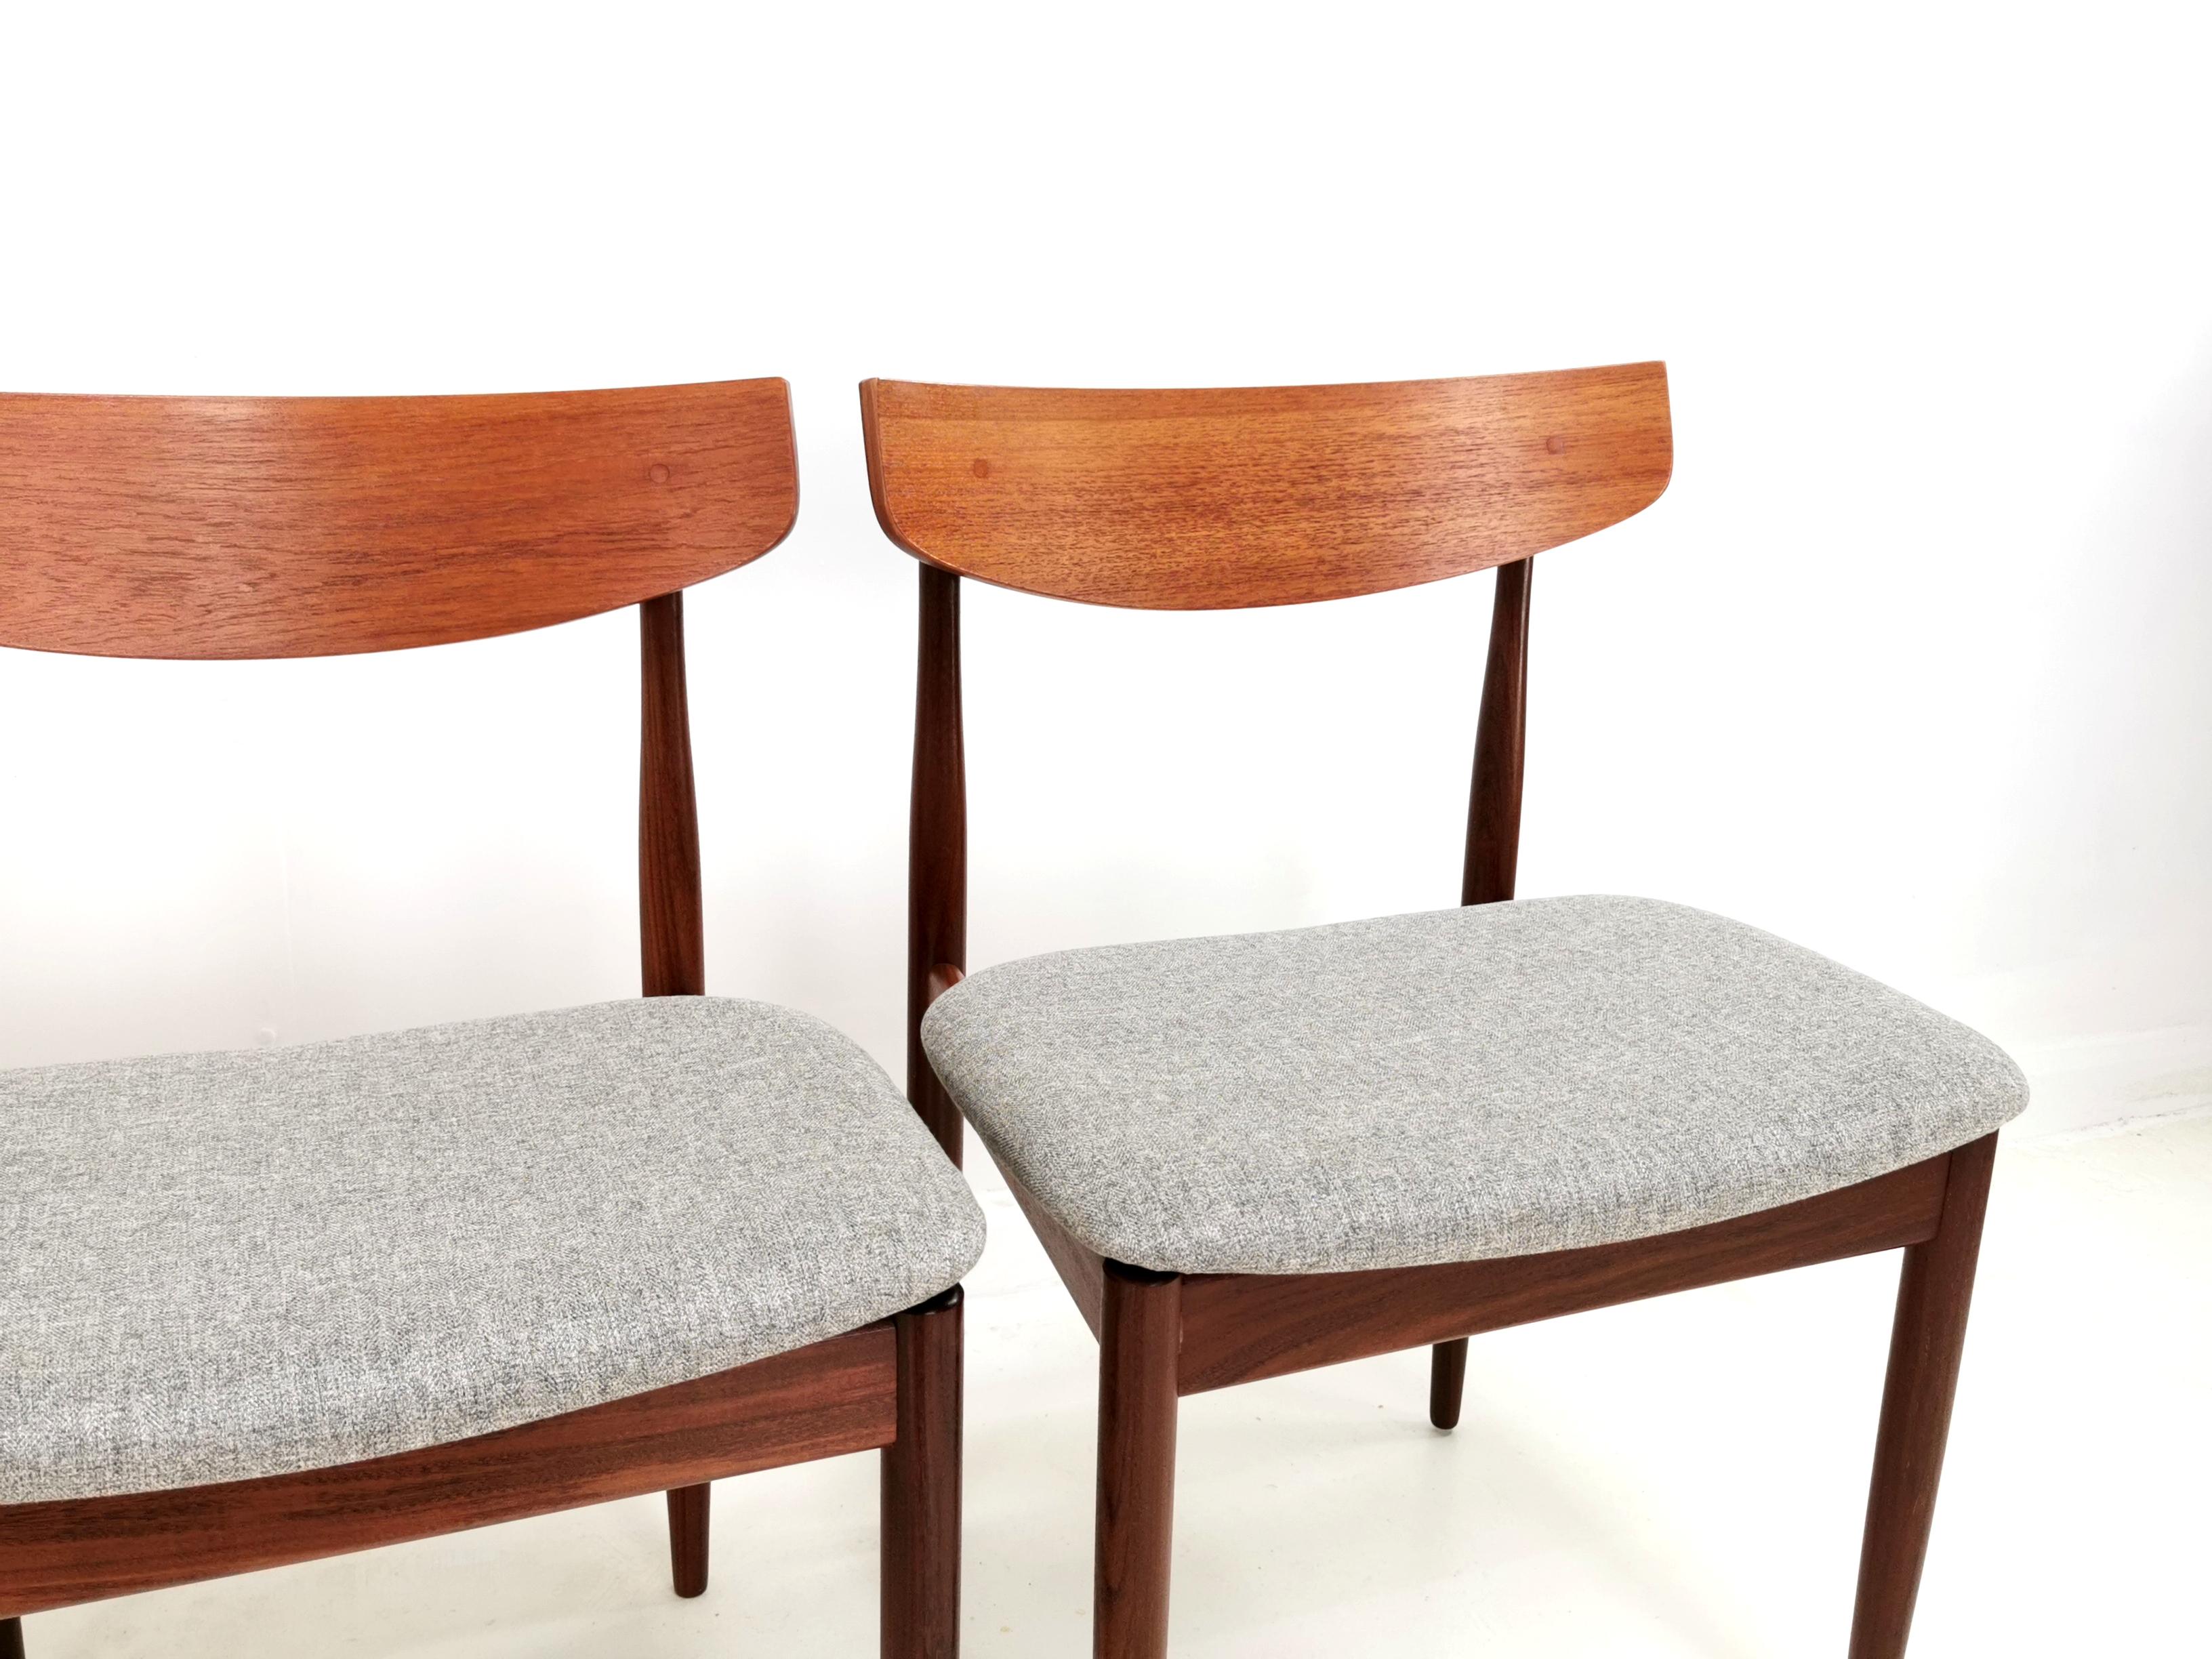 Kofod Larsen Teak G Plan Danish Dining Chairs 1960s Vintage Midcentury Set of 4 1